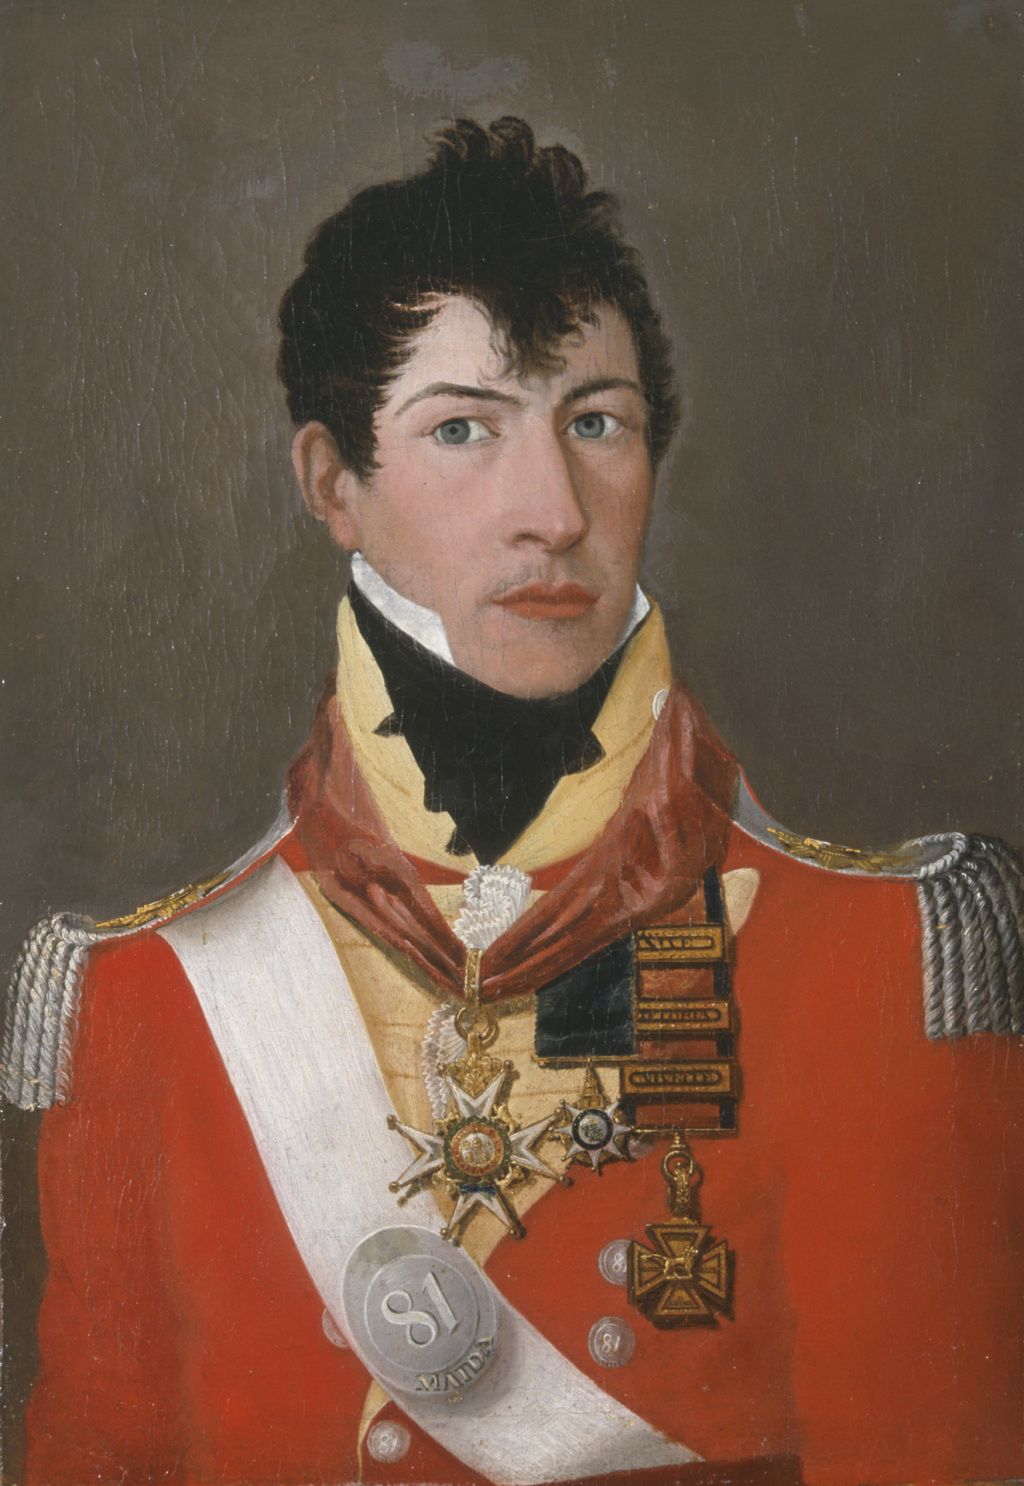 Major General Sir Edmund Keynton Williams (1778-1850)